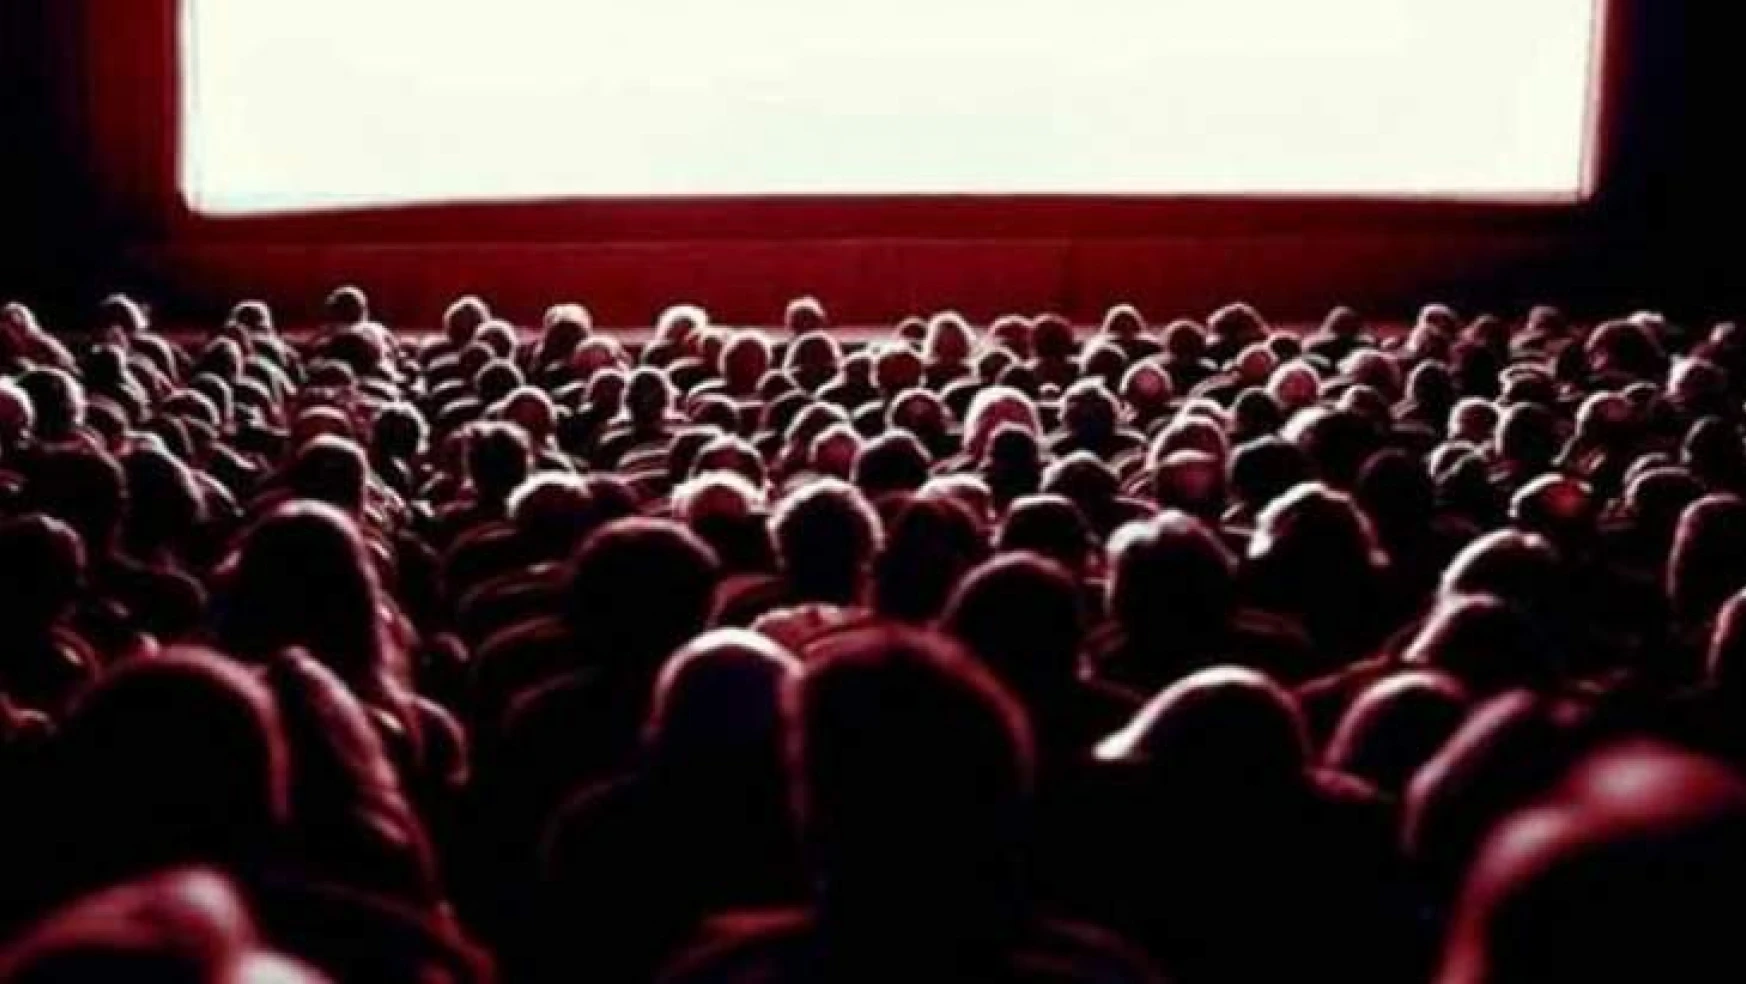 Sinema seyircisi sayısı %23,9 arttı